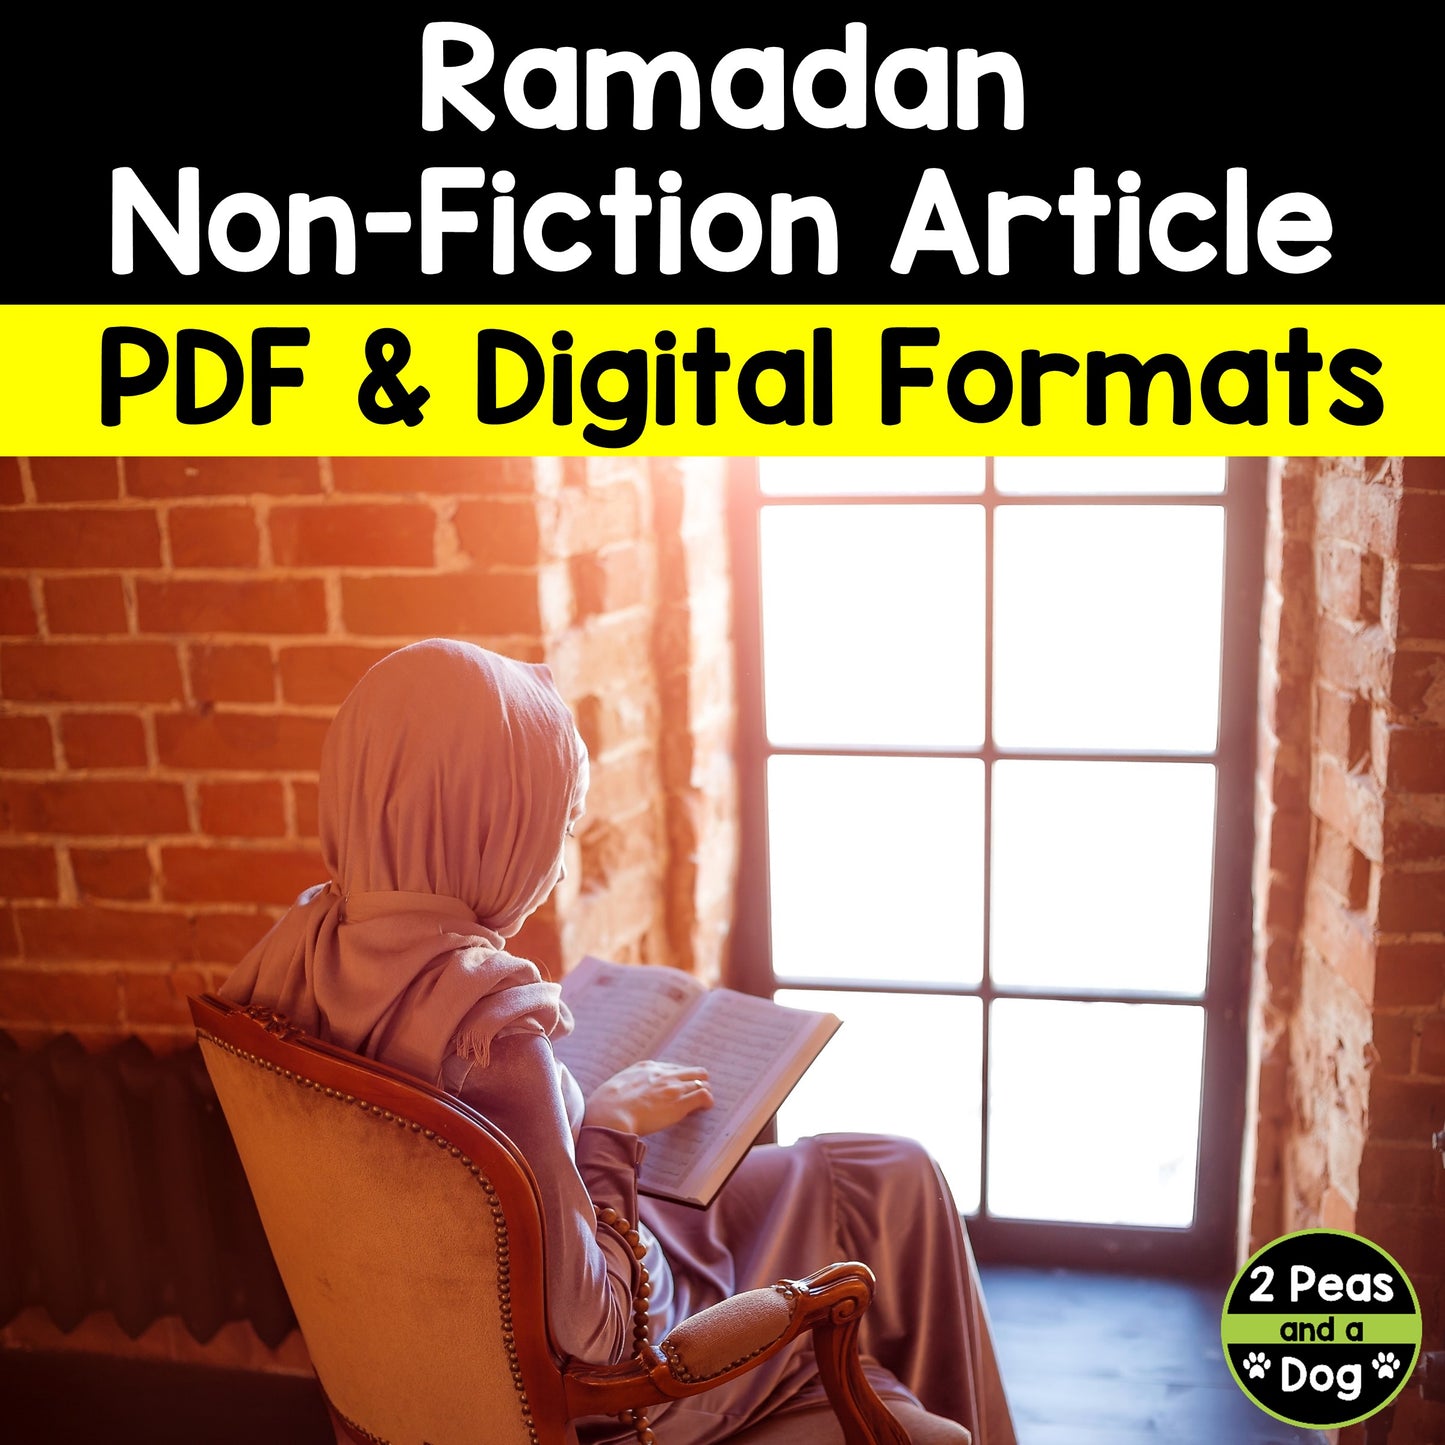 Ramadan Non-Fiction Article